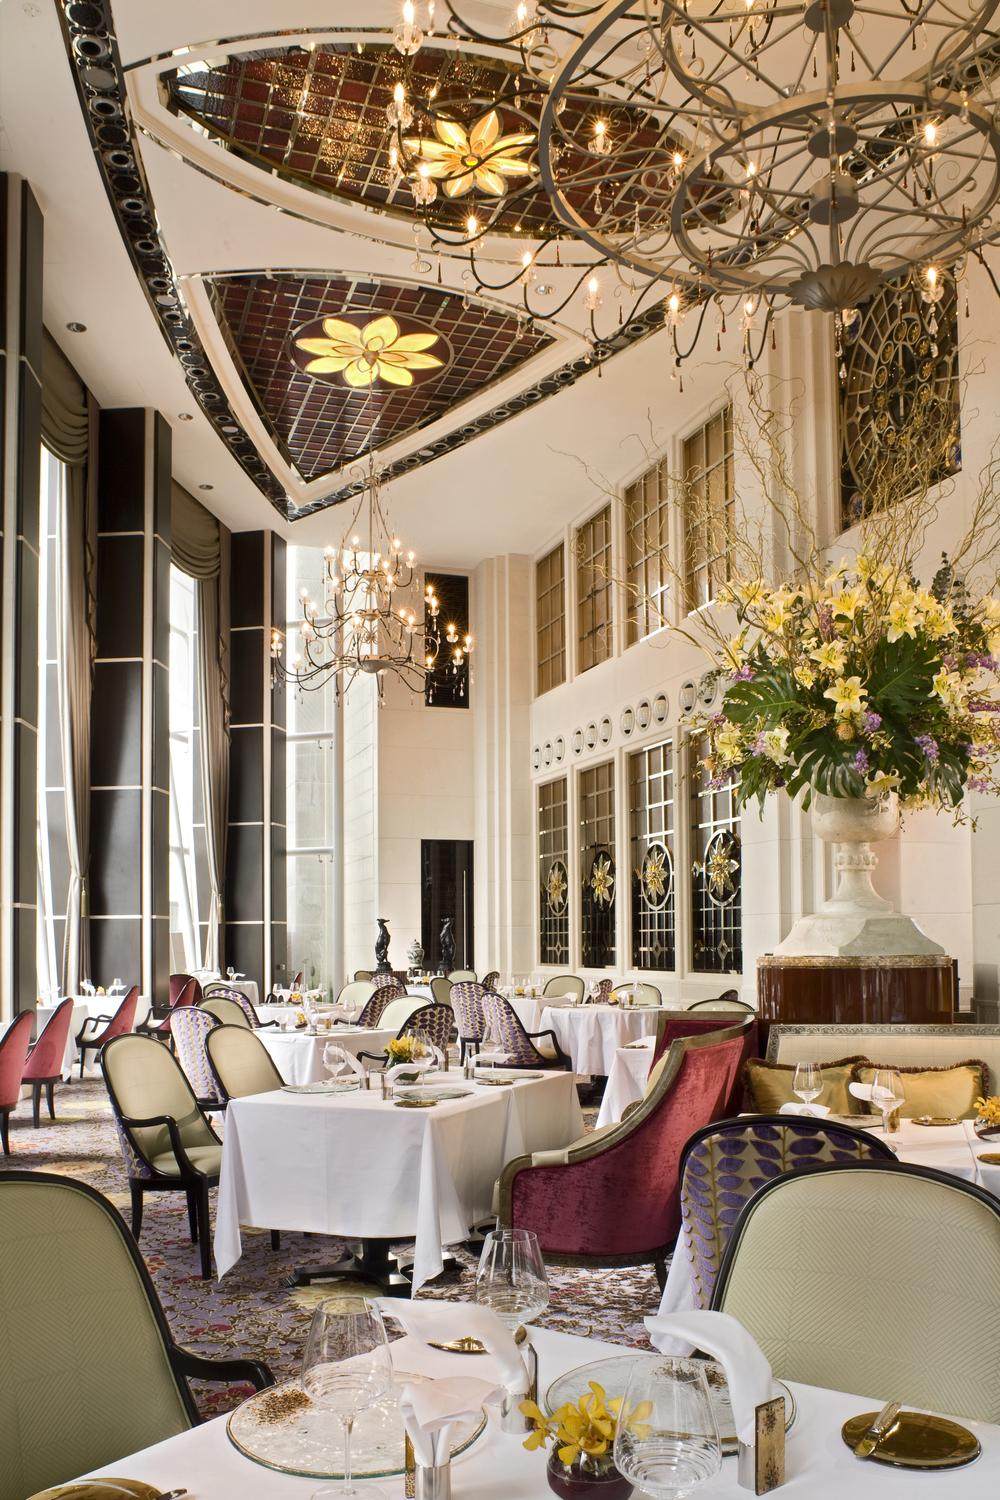 新加坡瑞吉酒店 he St. Regis Singapore_36)The St. Regis Singapore—Classic Dining at Brasserie Les Saveurs 拍攝者.jpg